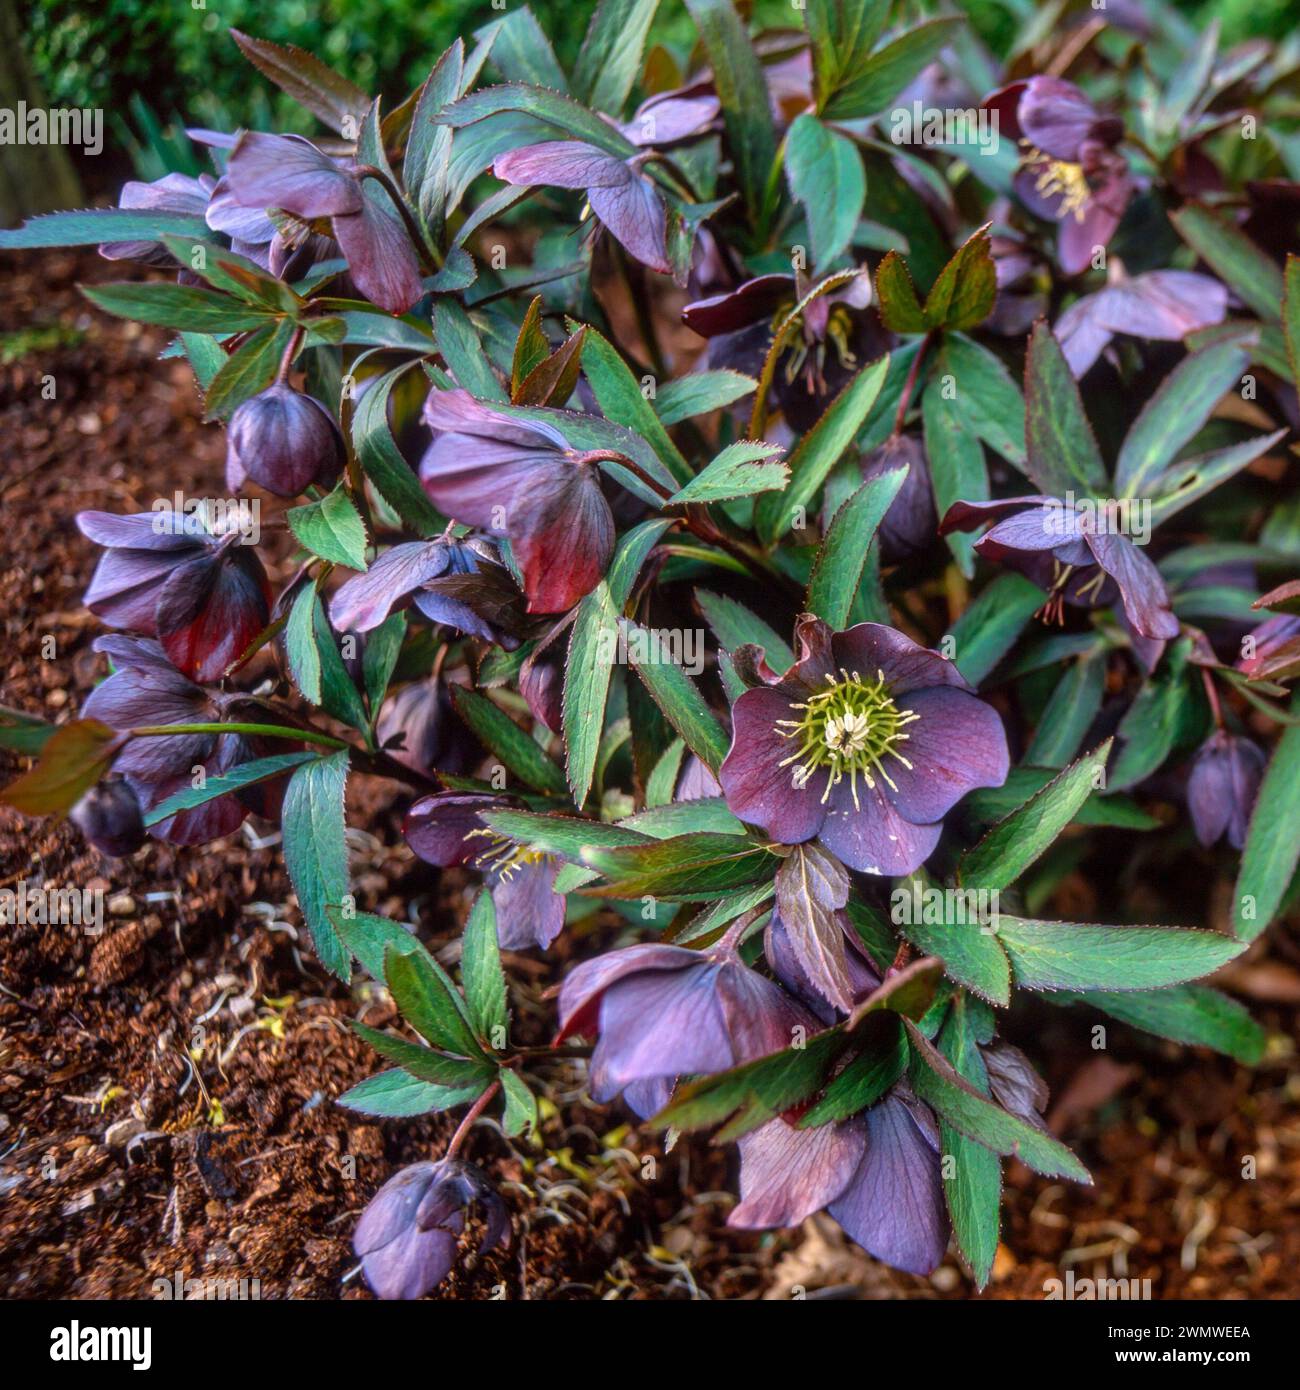 Hellebore 'Smokey Blue' plante hellebore avec des fleurs pourpre ardoise foncée à la fin de l'hiver début printemps croissance dans le jardin anglais, Angleterre, Royaume-Uni Banque D'Images